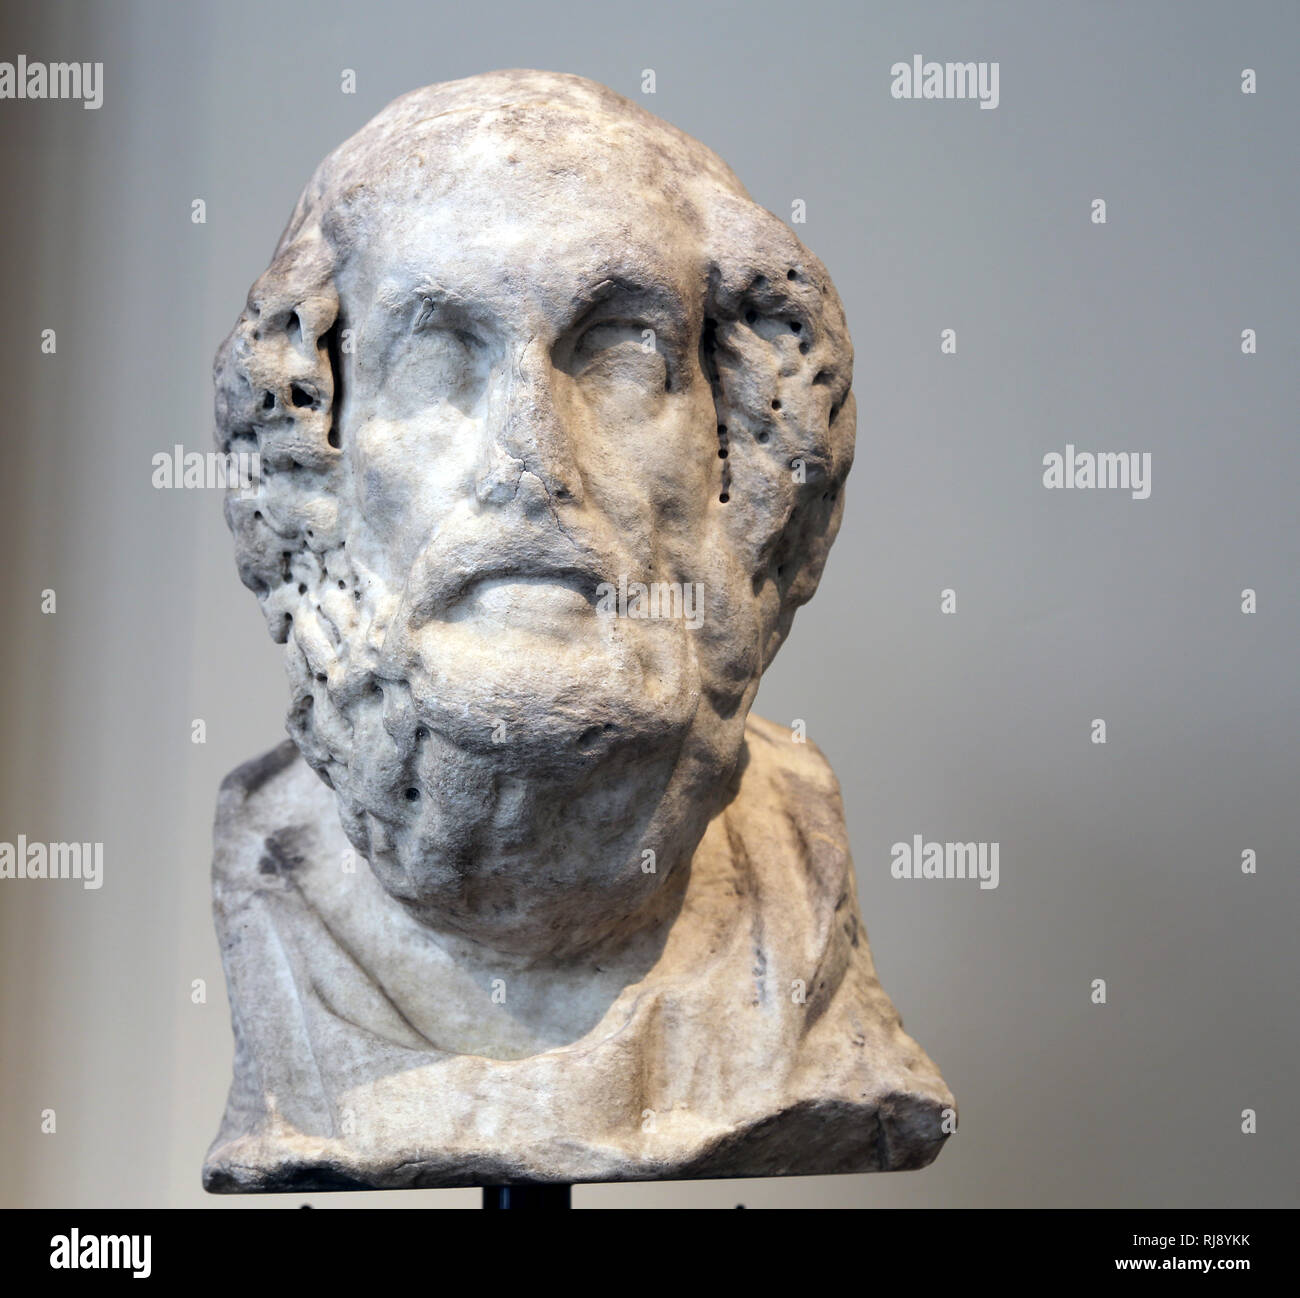 Portrait der antiken griechischen Dichter Homer, der legendäre Autor der Illiad und der Odyssee. Stockfoto